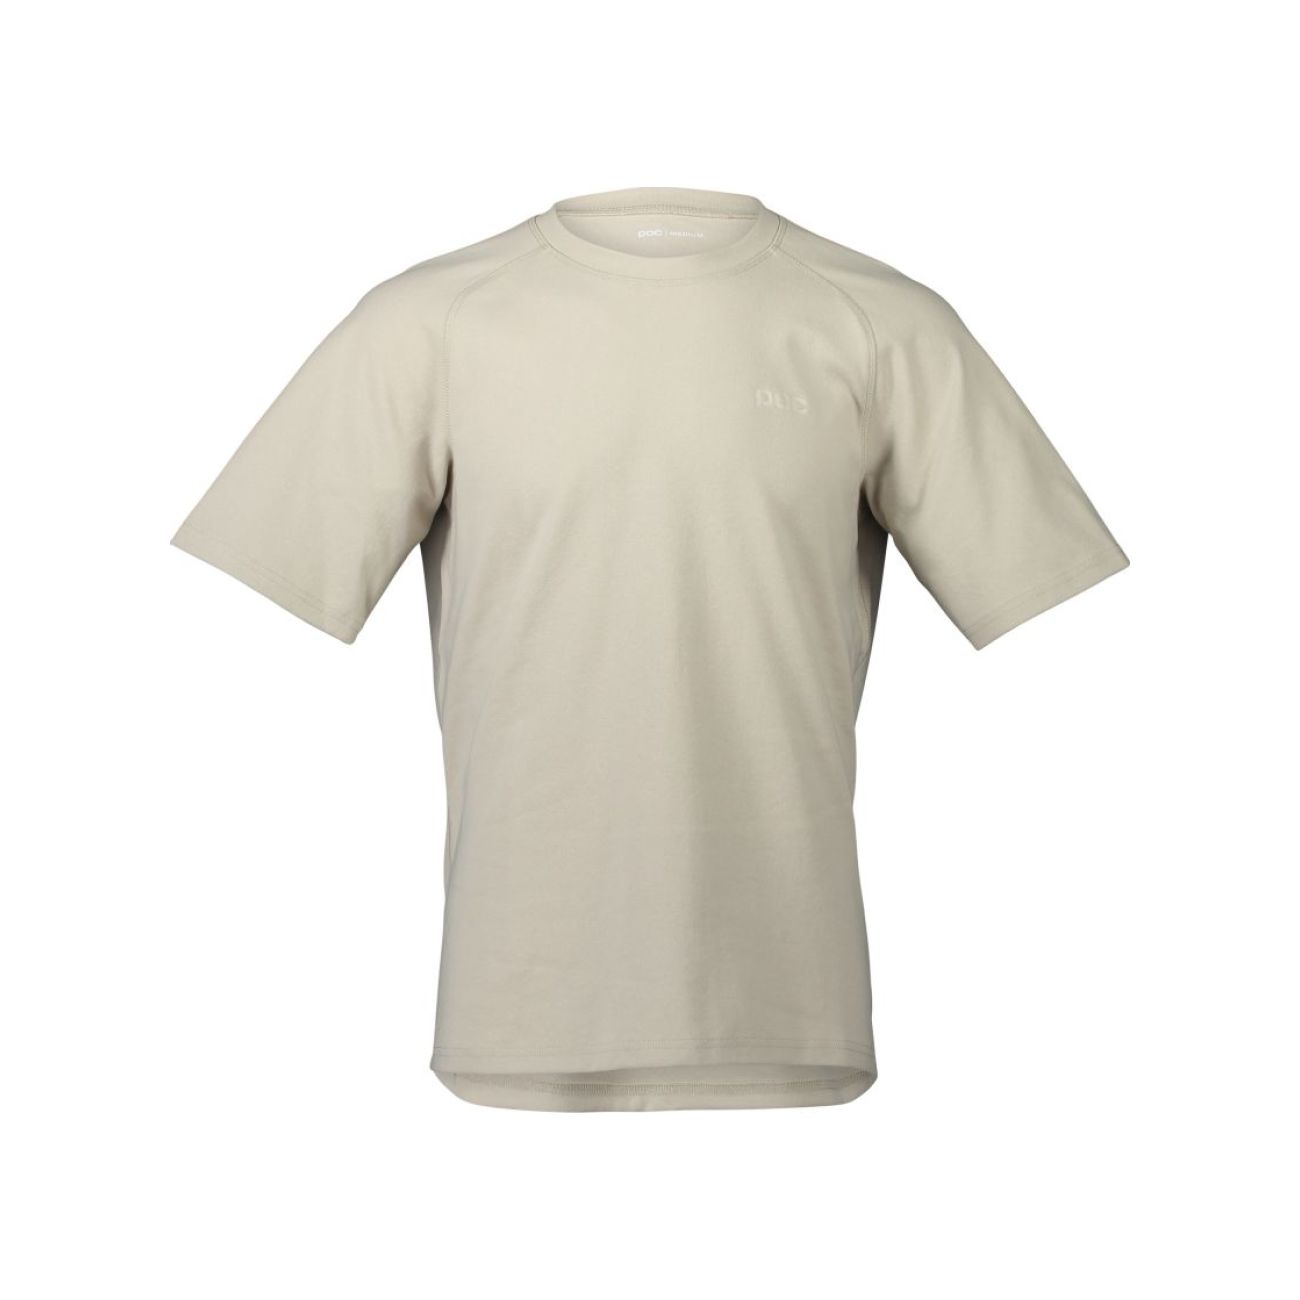 POC Kolarska Koszulka Z Krótkim Rękawem - POISE - Beżowy